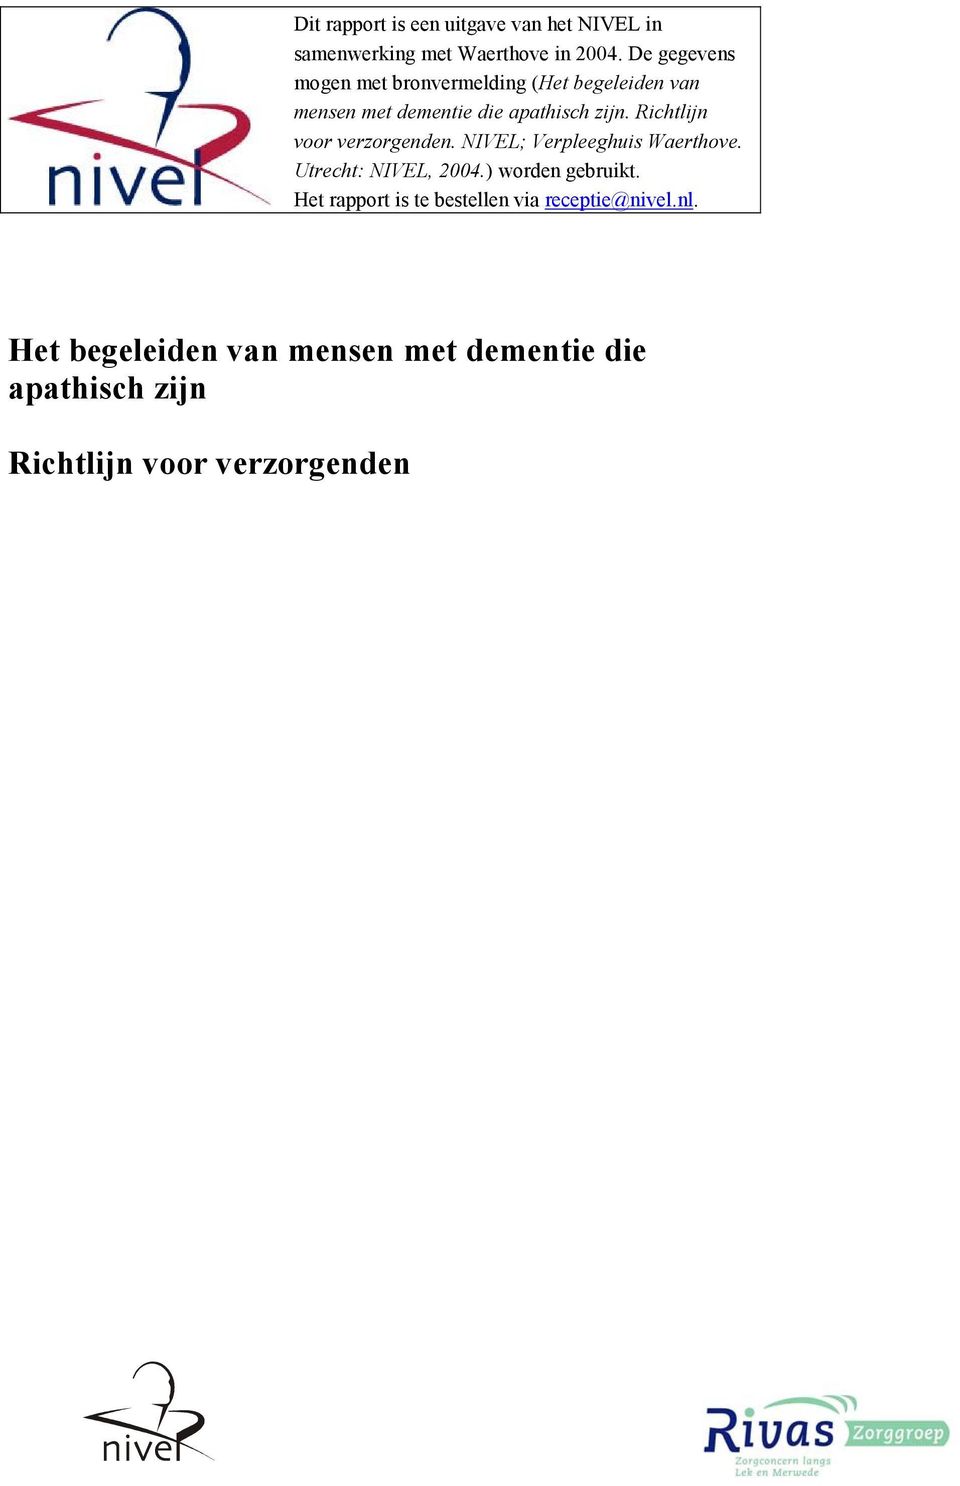 Richtlijn voor verzorgenden. NIVEL; Verpleeghuis Waerthove. Utrecht: NIVEL, 2004.) worden gebruikt.